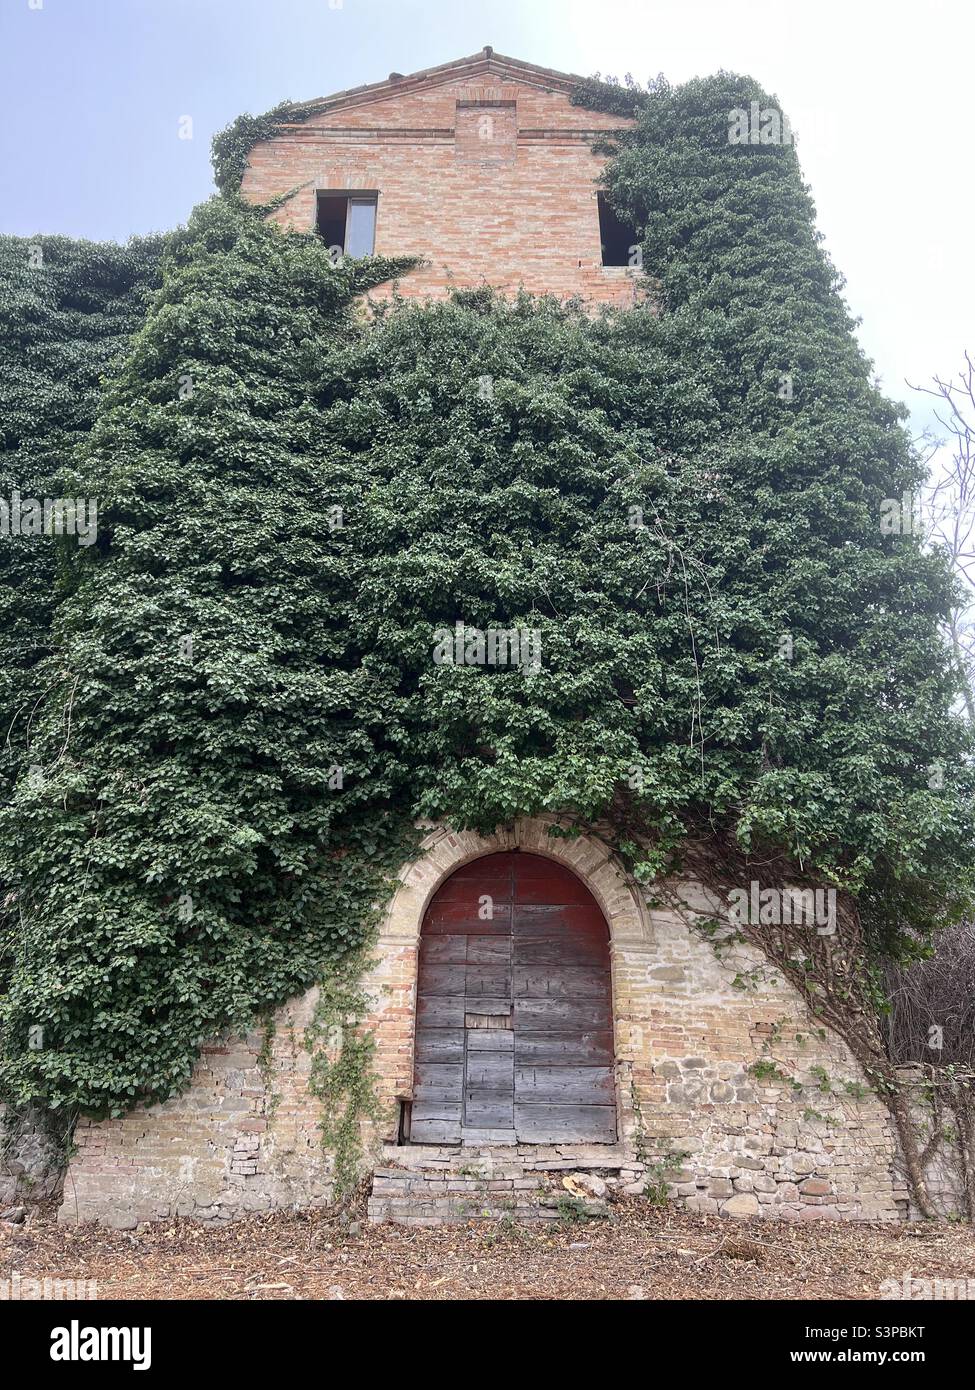 Entrada oriental del castillo de Montevarmine, Carassai, región de Marche, Italia Foto de stock